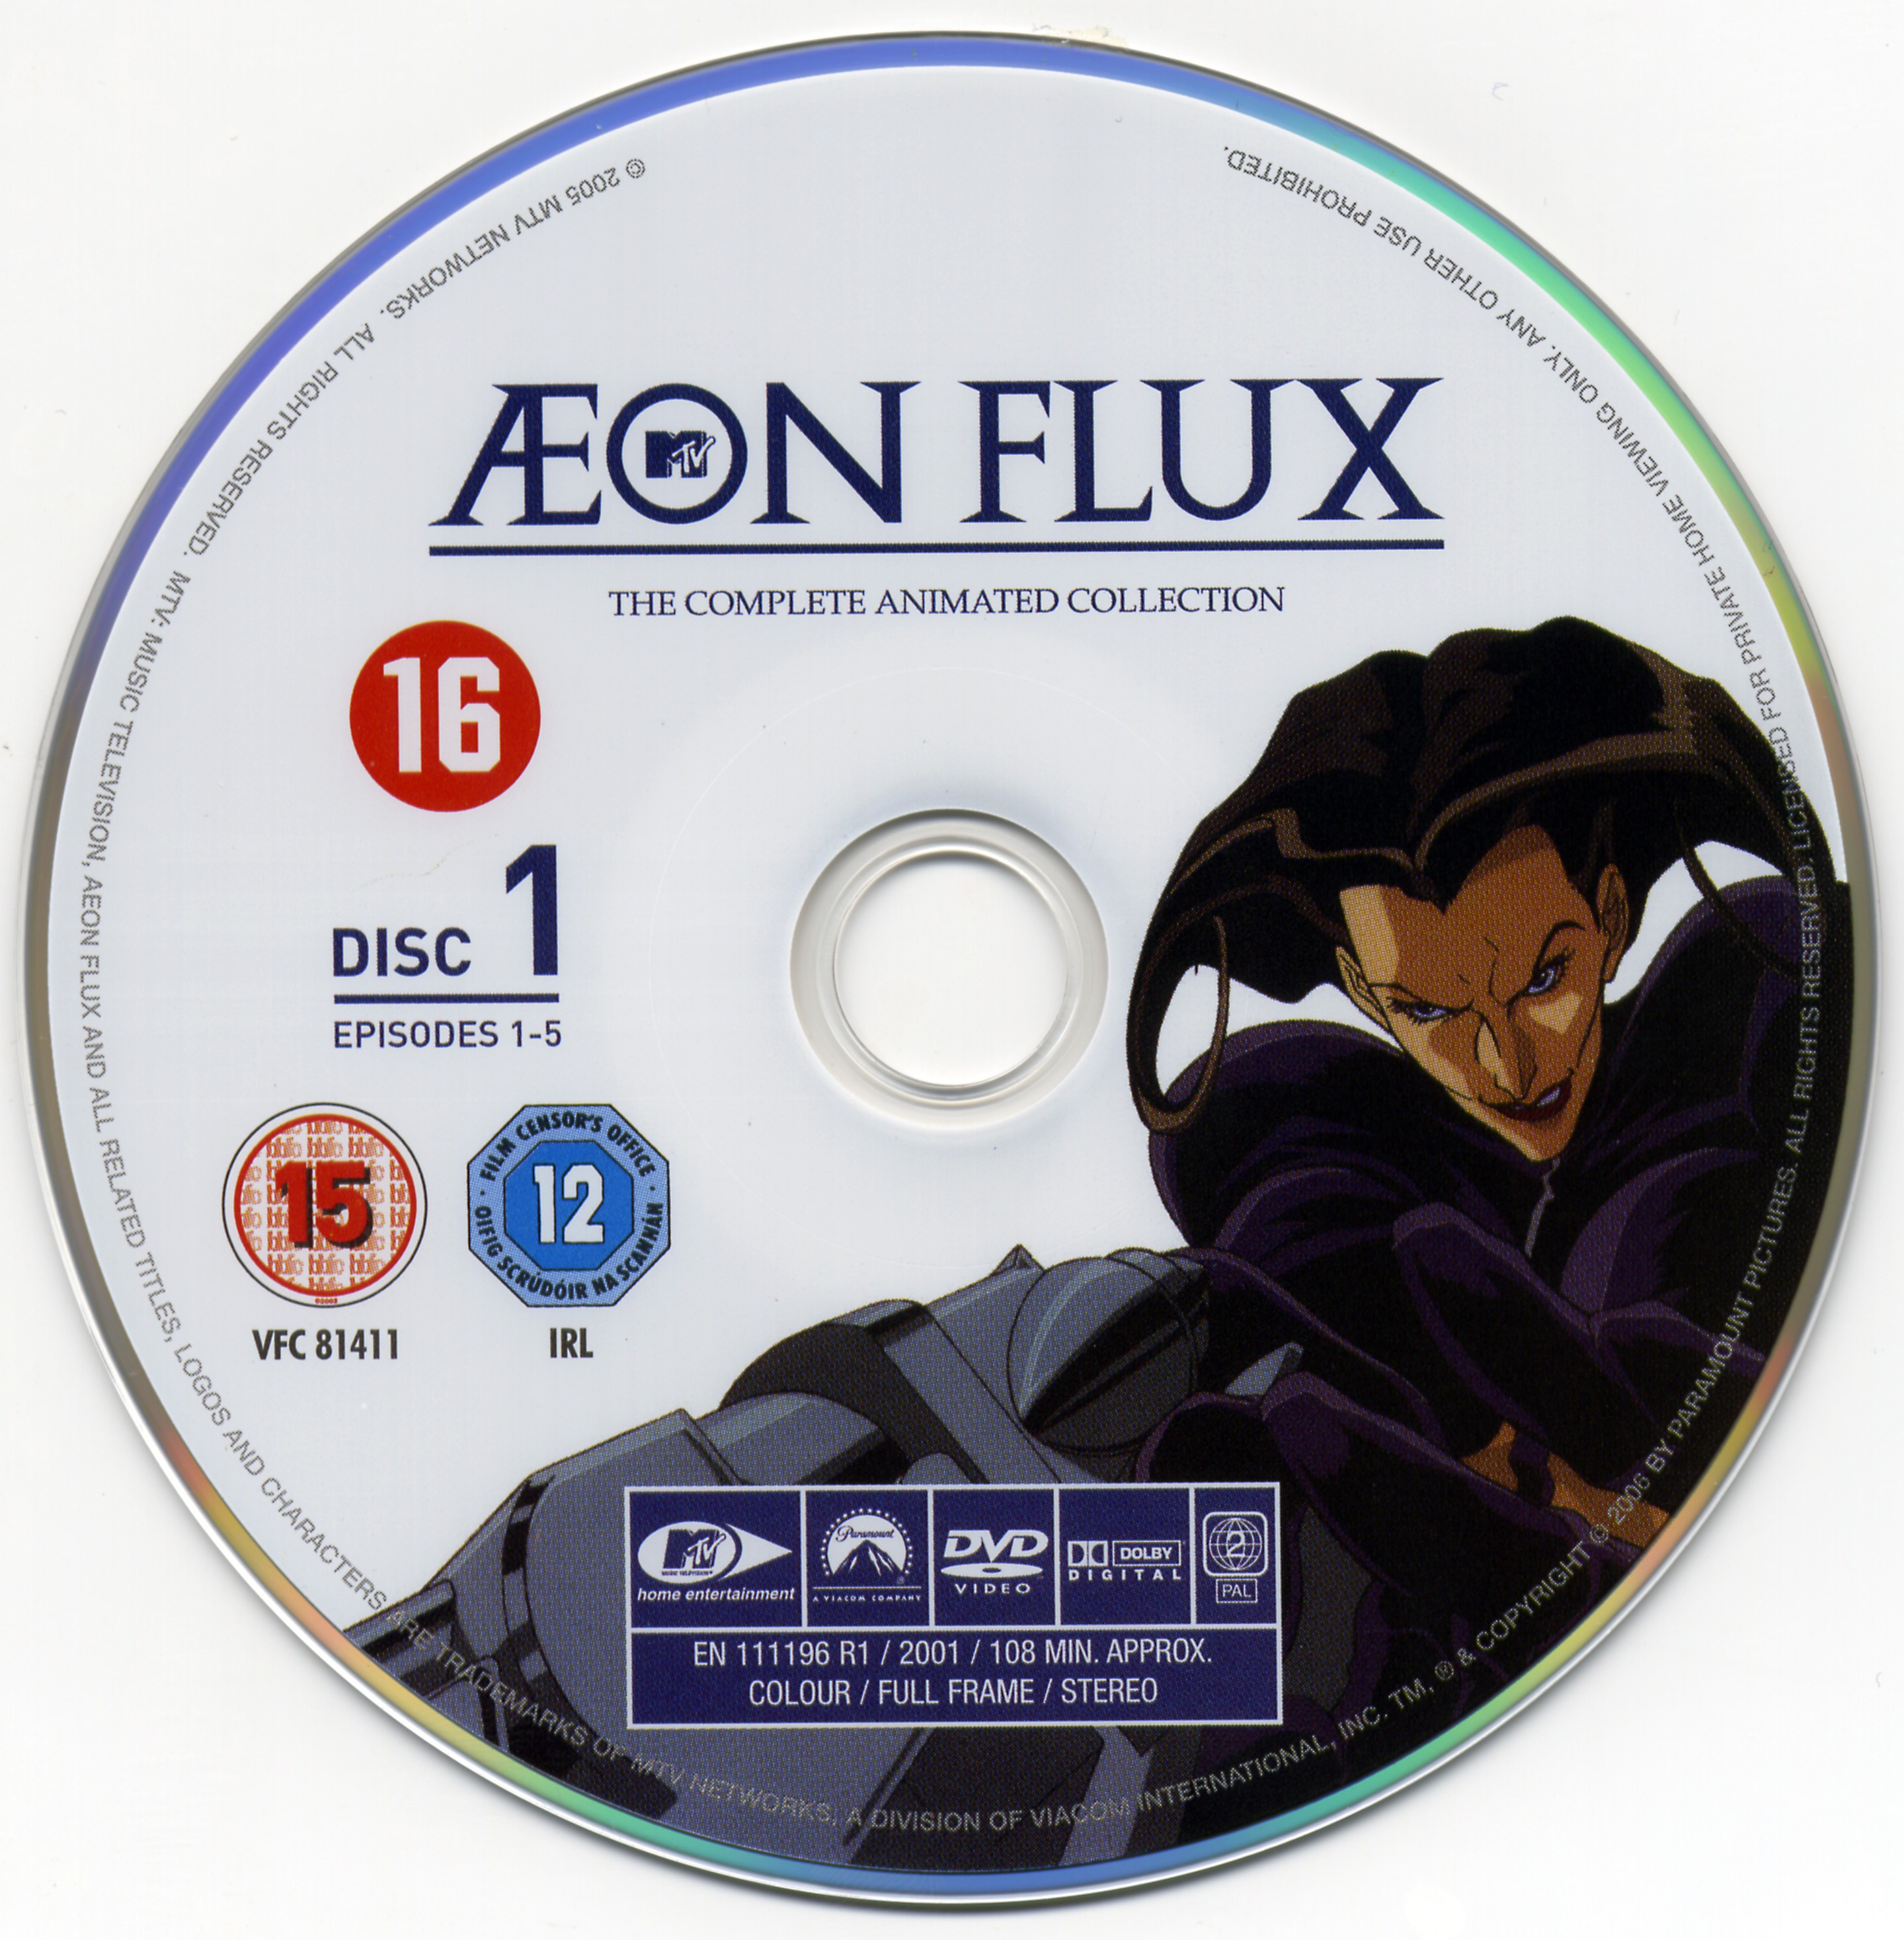 Aeon flux DVD 1